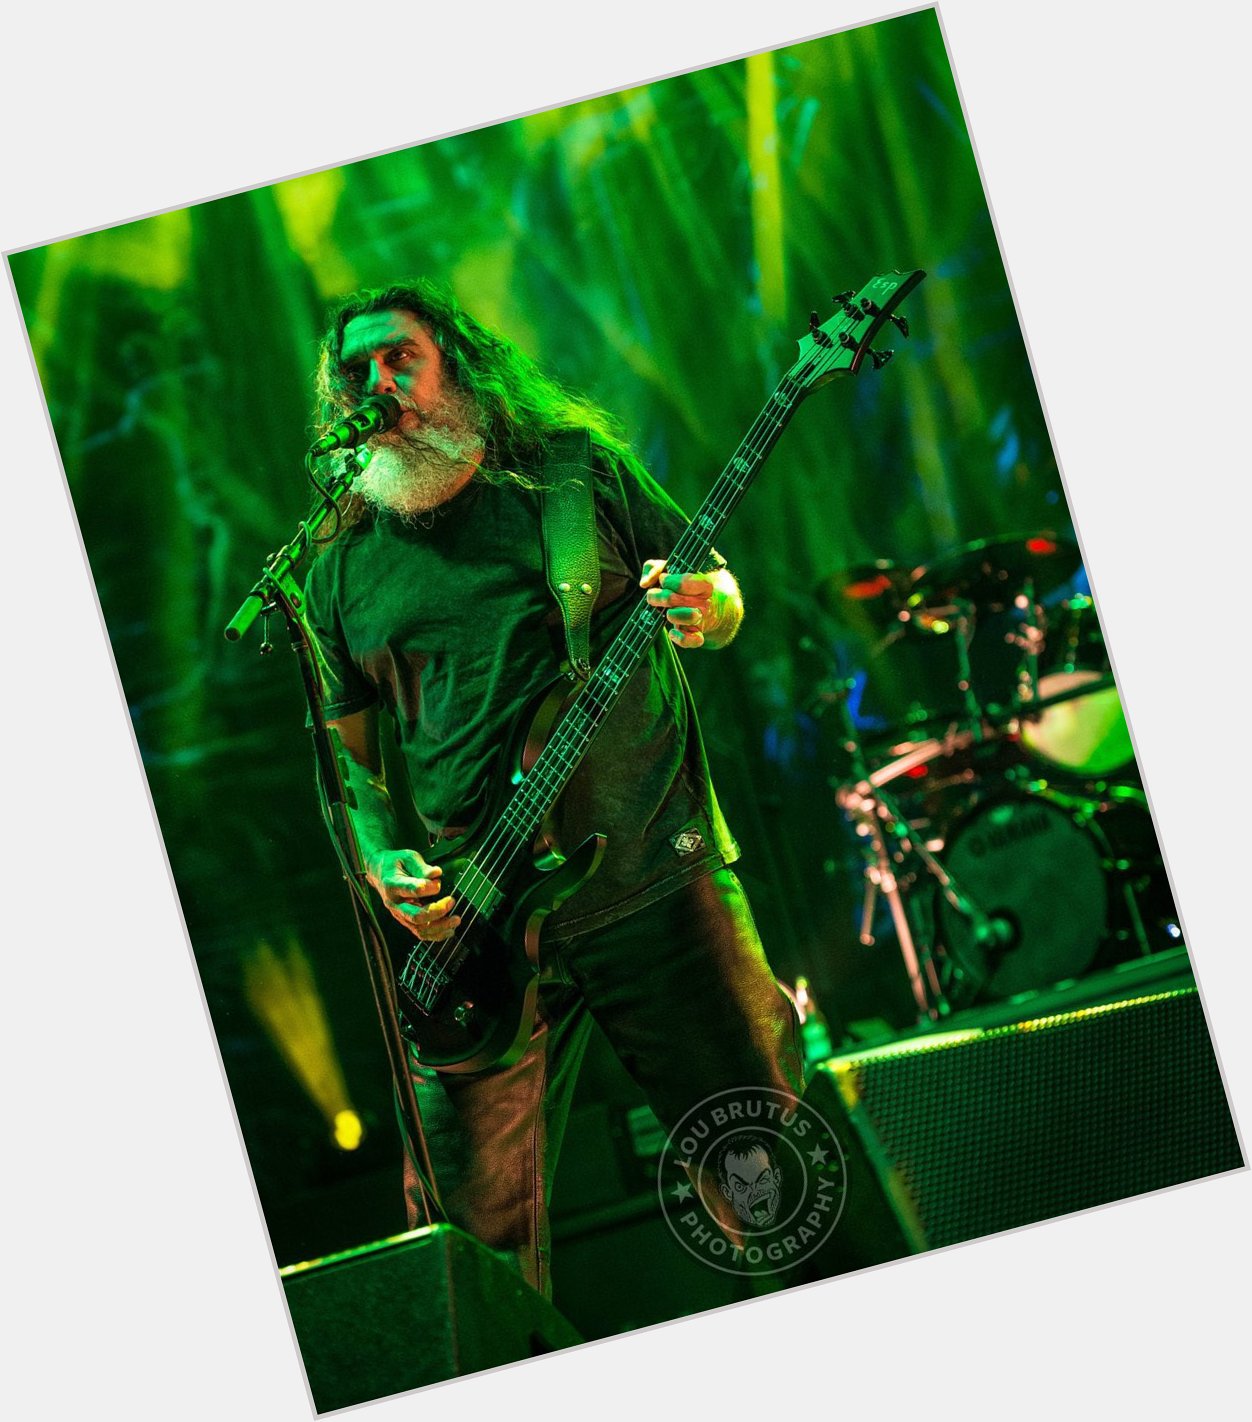 Harddriveradio \"Happy Birthday to Tom Araya of Slayer!  